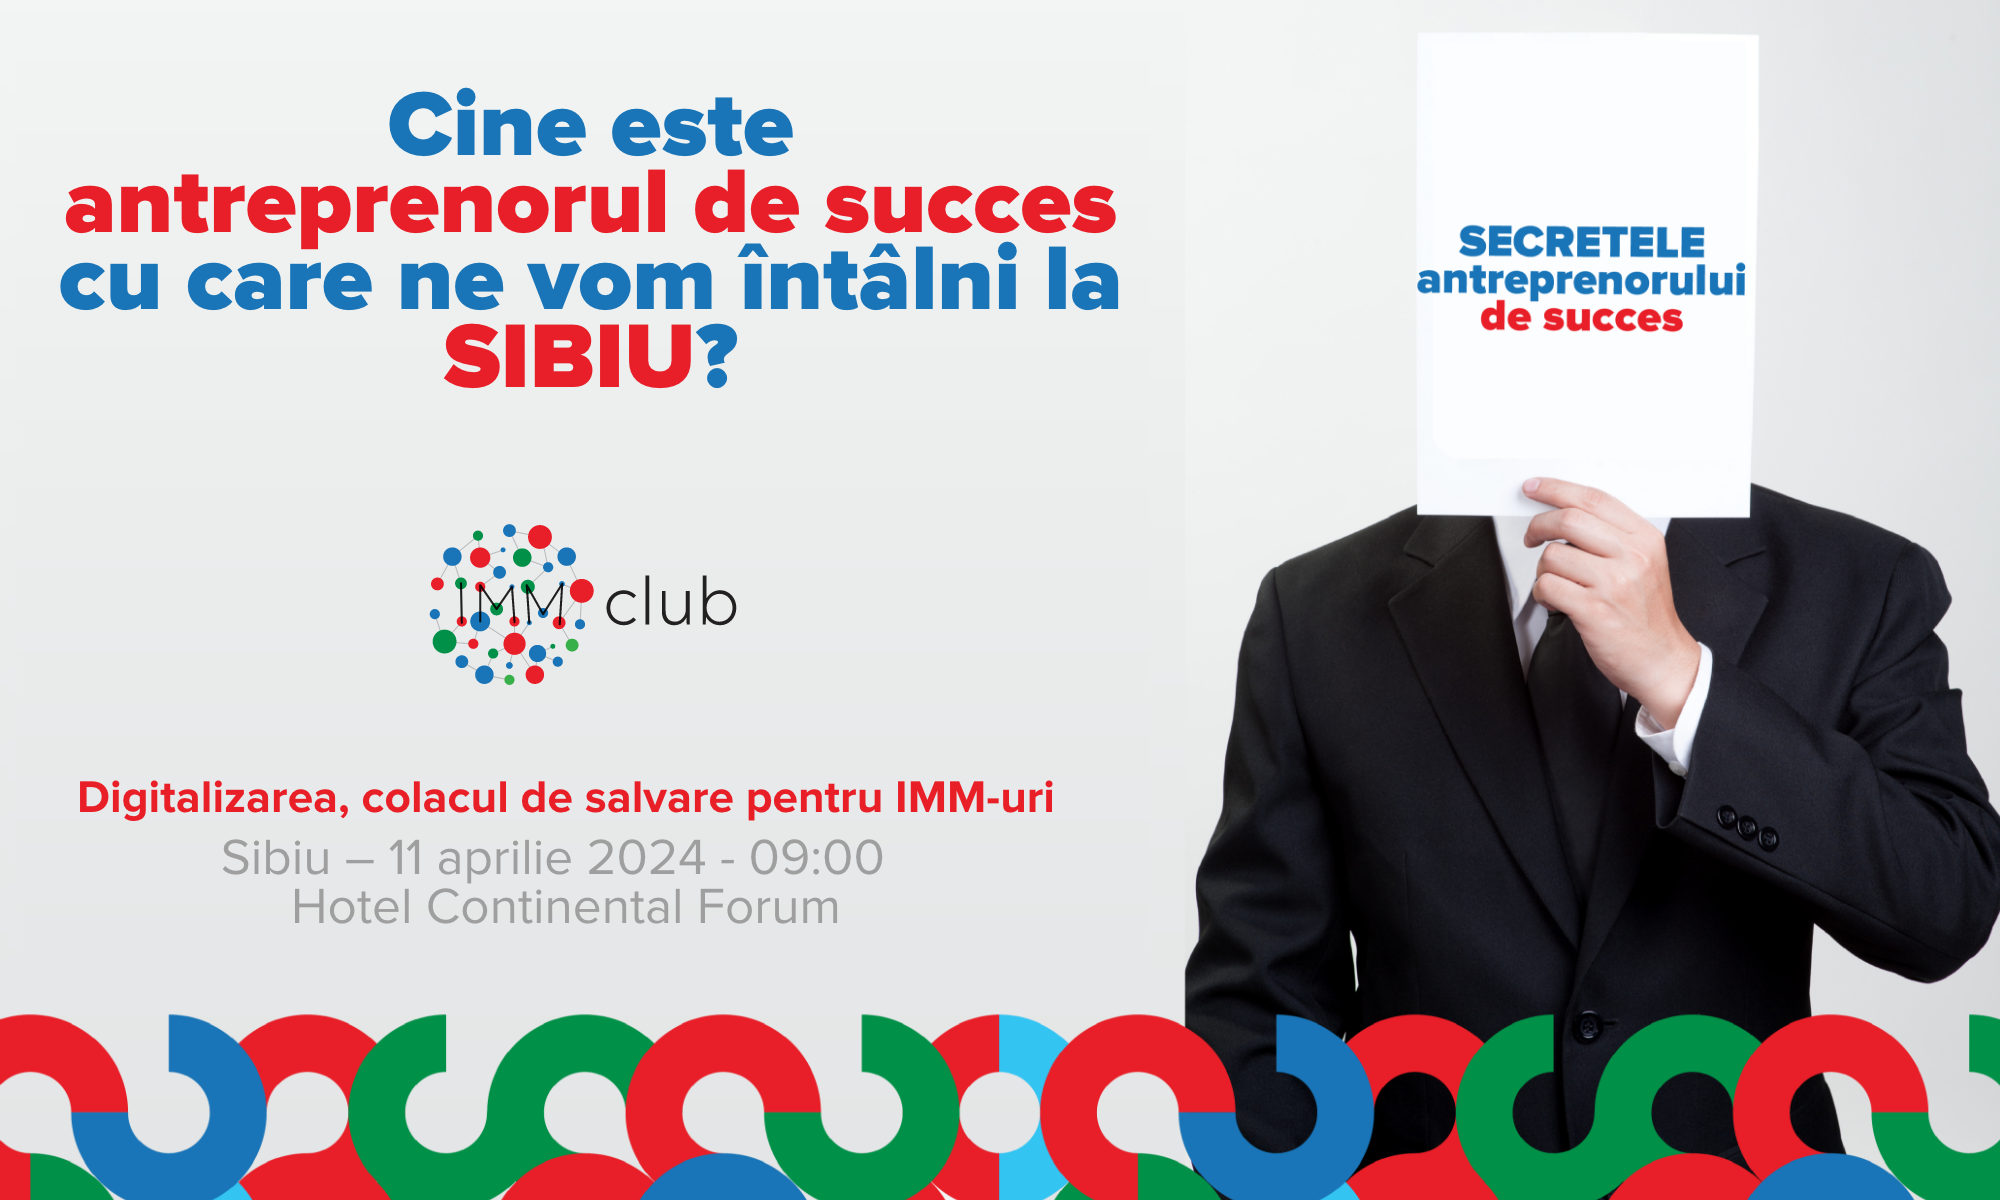 Eveniment pentru antreprenori, la Sibiu: IMM Club organizează evenimentul ”Secretele antreprenorului de succes”, în parteneriat cu Ziarul Financiar şi Contzilla şi cu susţinerea BERD